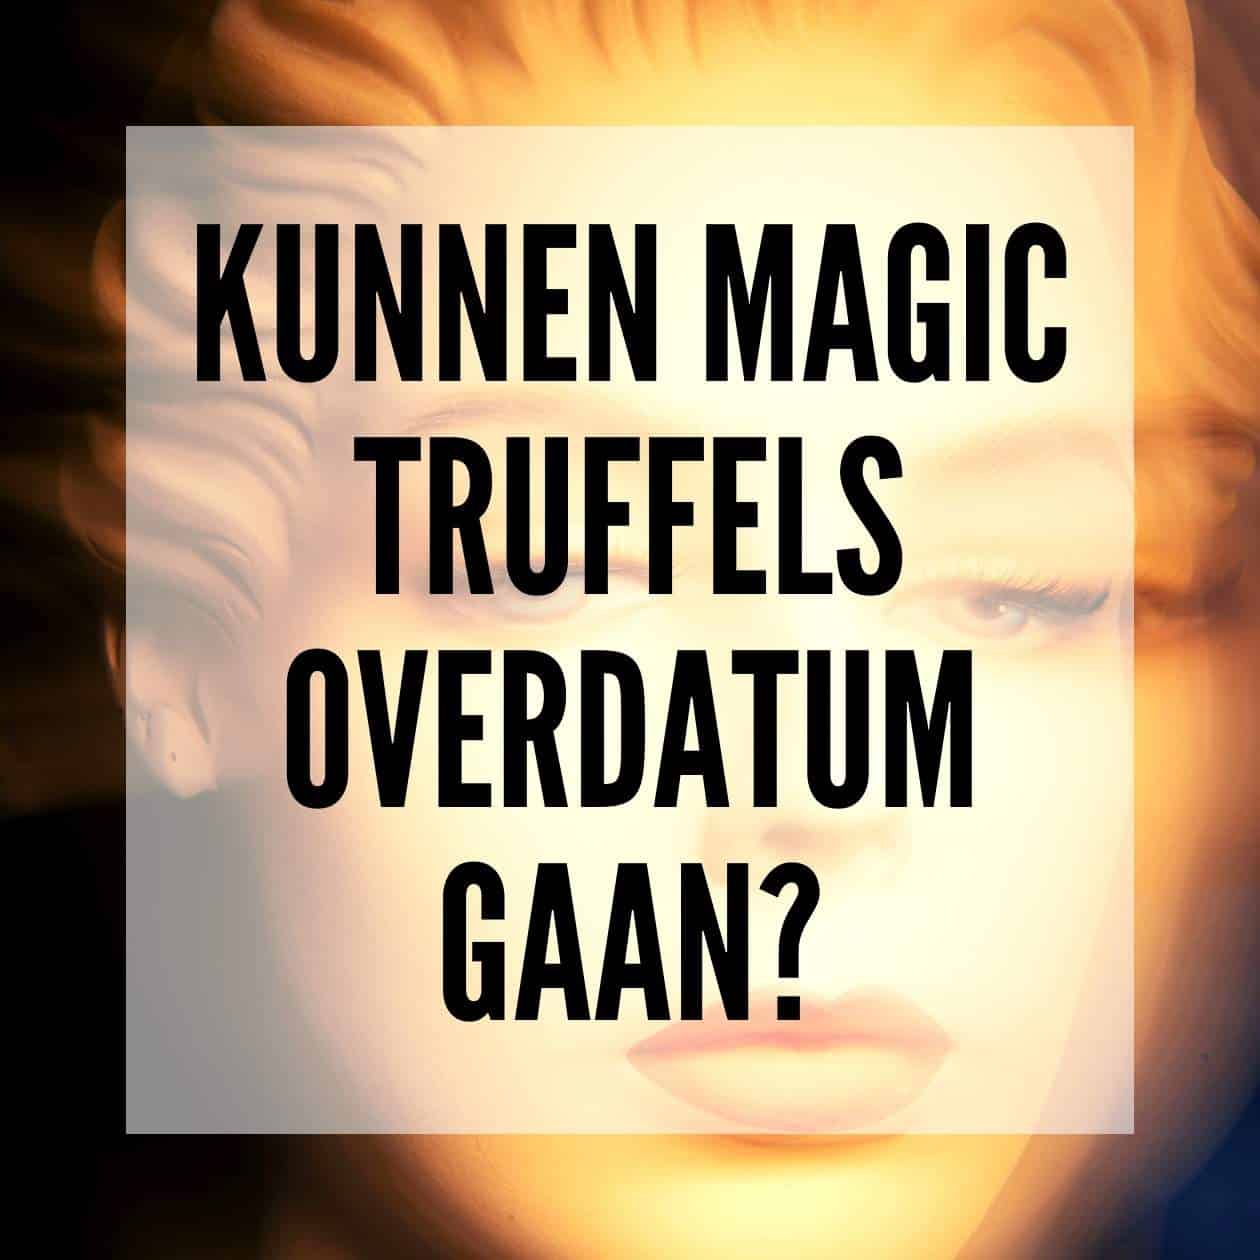 Kunnen Magic Truffels overdatum gaan?